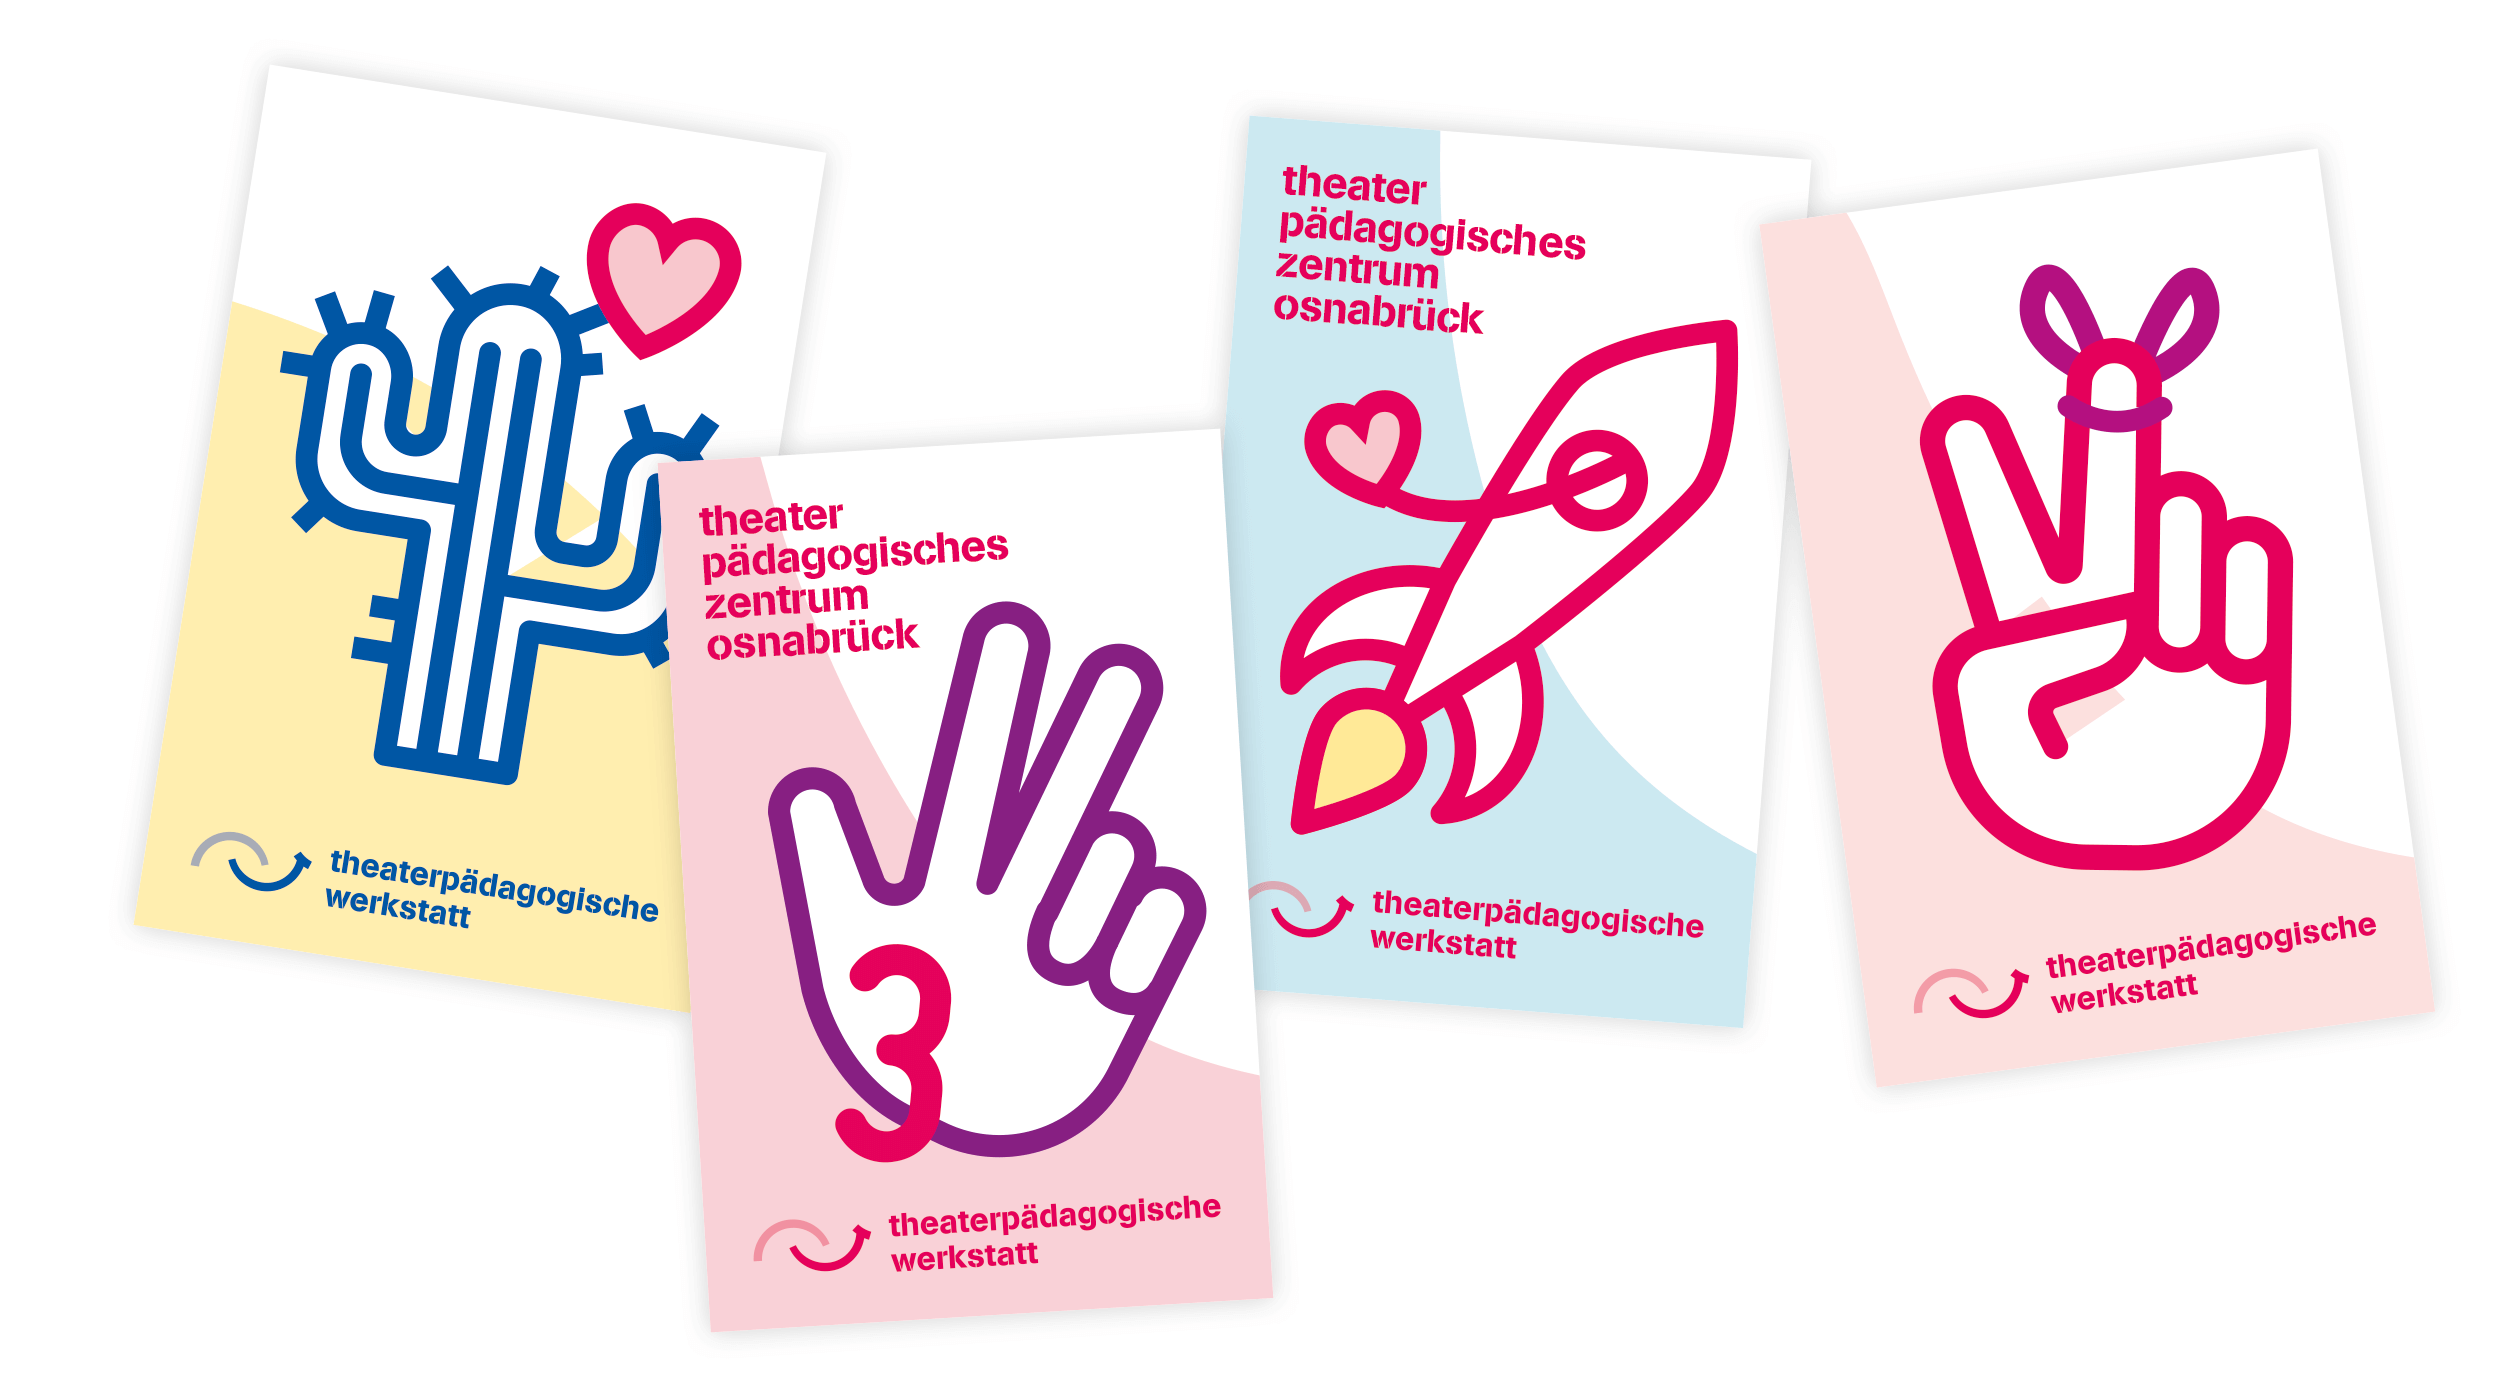 vier verschiedene Visitenkarten der theaterpädagogische Werkstatt Osnabrück mit bunten Icons